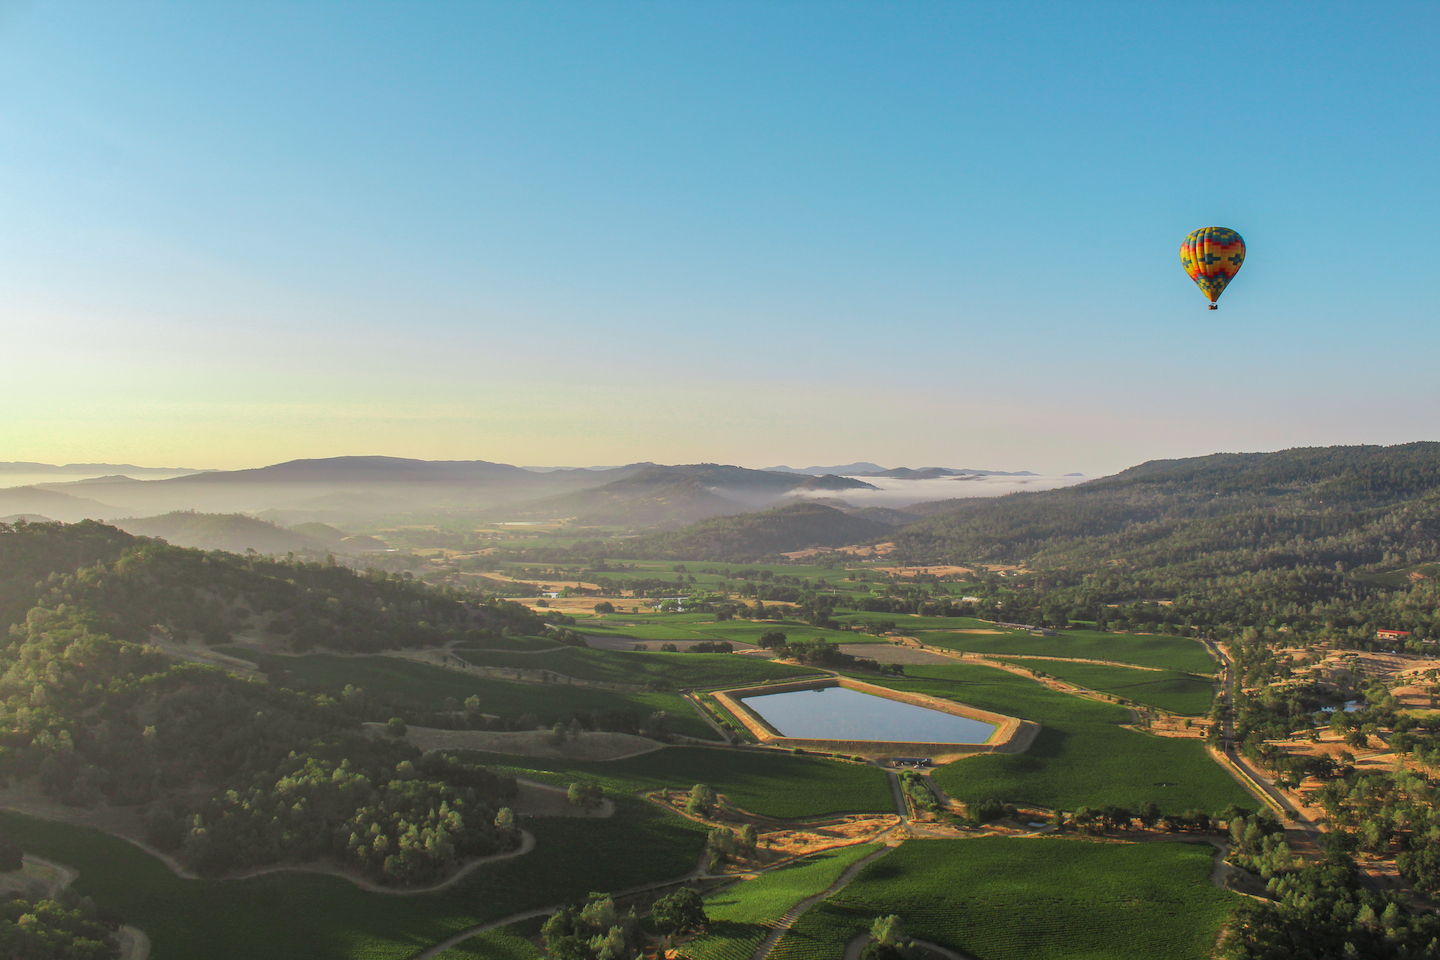 Hot air balloons over Napa Valley, California